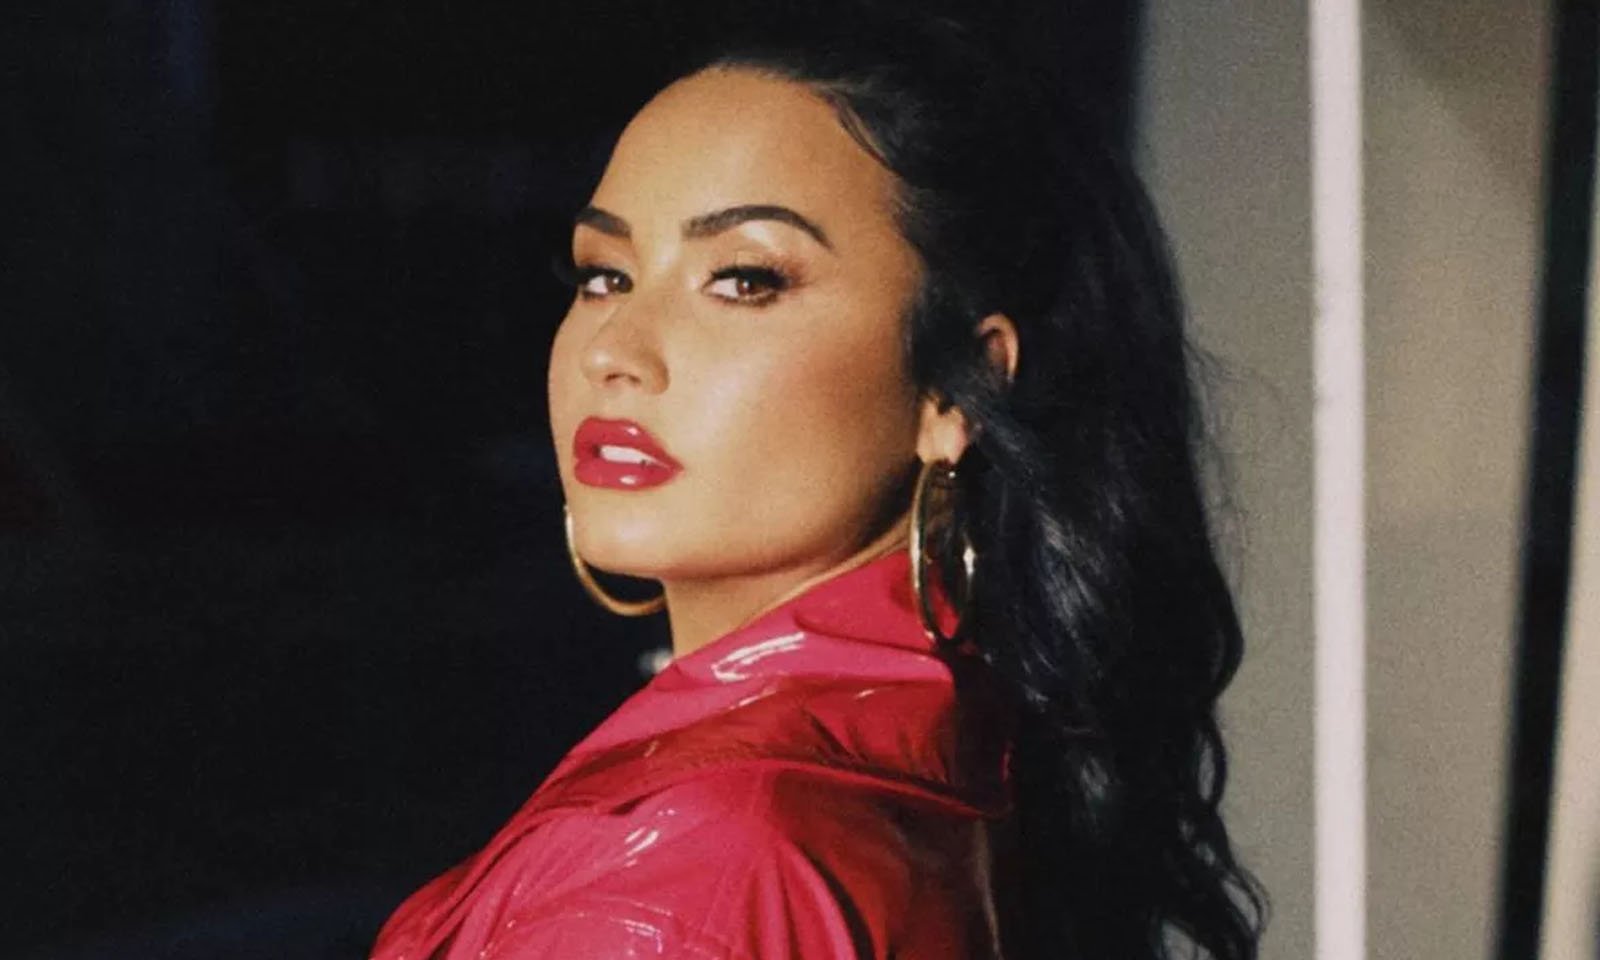 Demi Lovato segue brasileiro no Instagram com apelido de 'Totó do Grau'